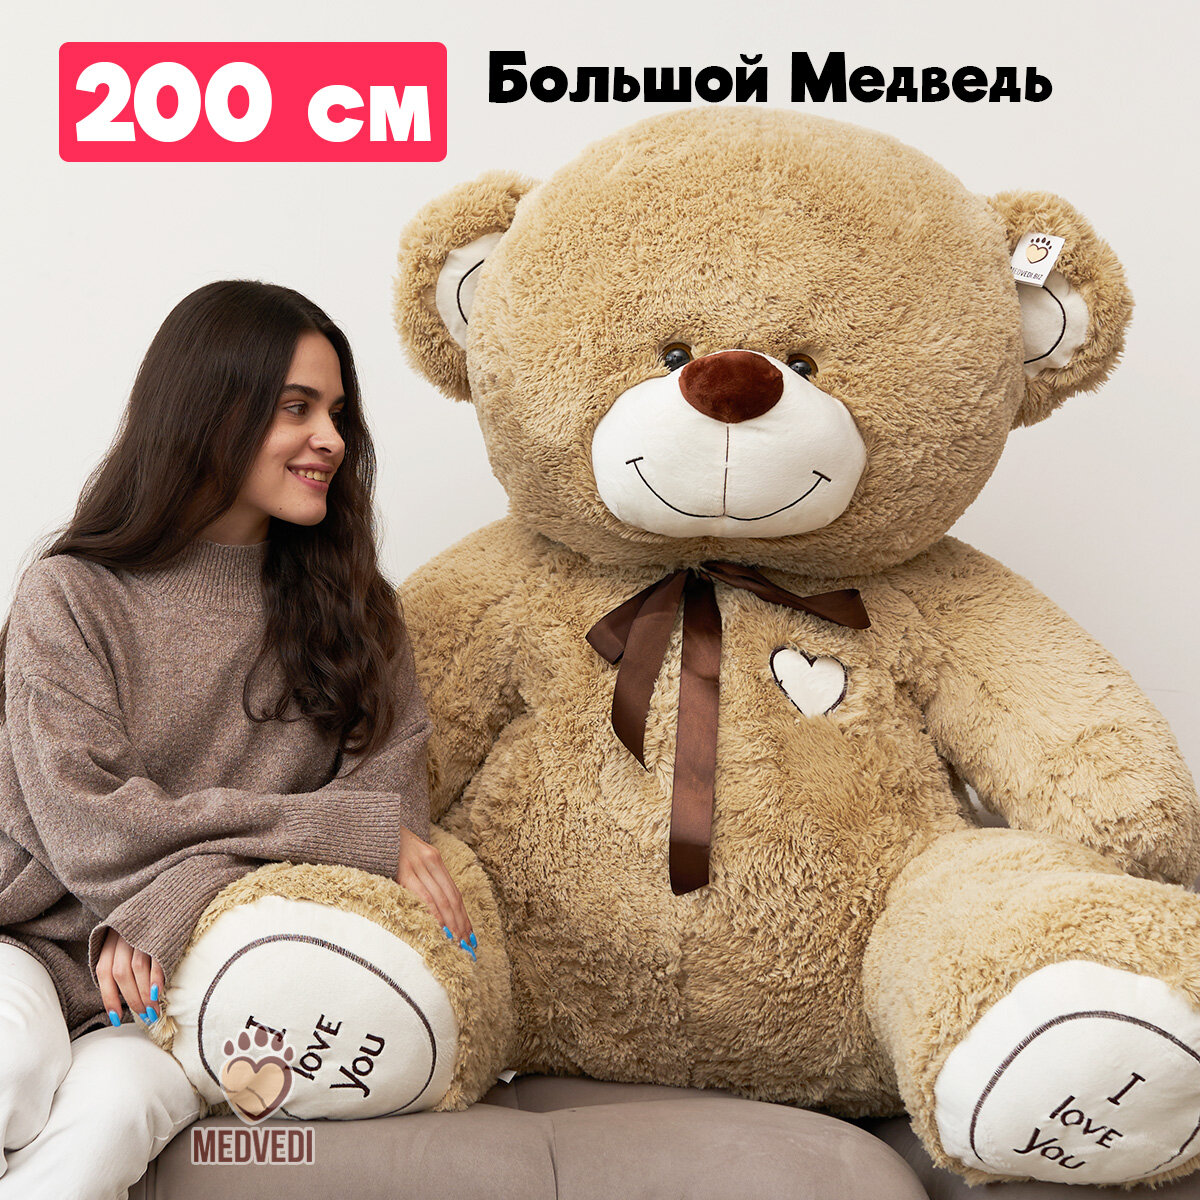 Мягкая игрушка большой плюшевый медведь I Love You Тима 200 см (2м) - (длина в рост 150 см сидя по спине 110 см)